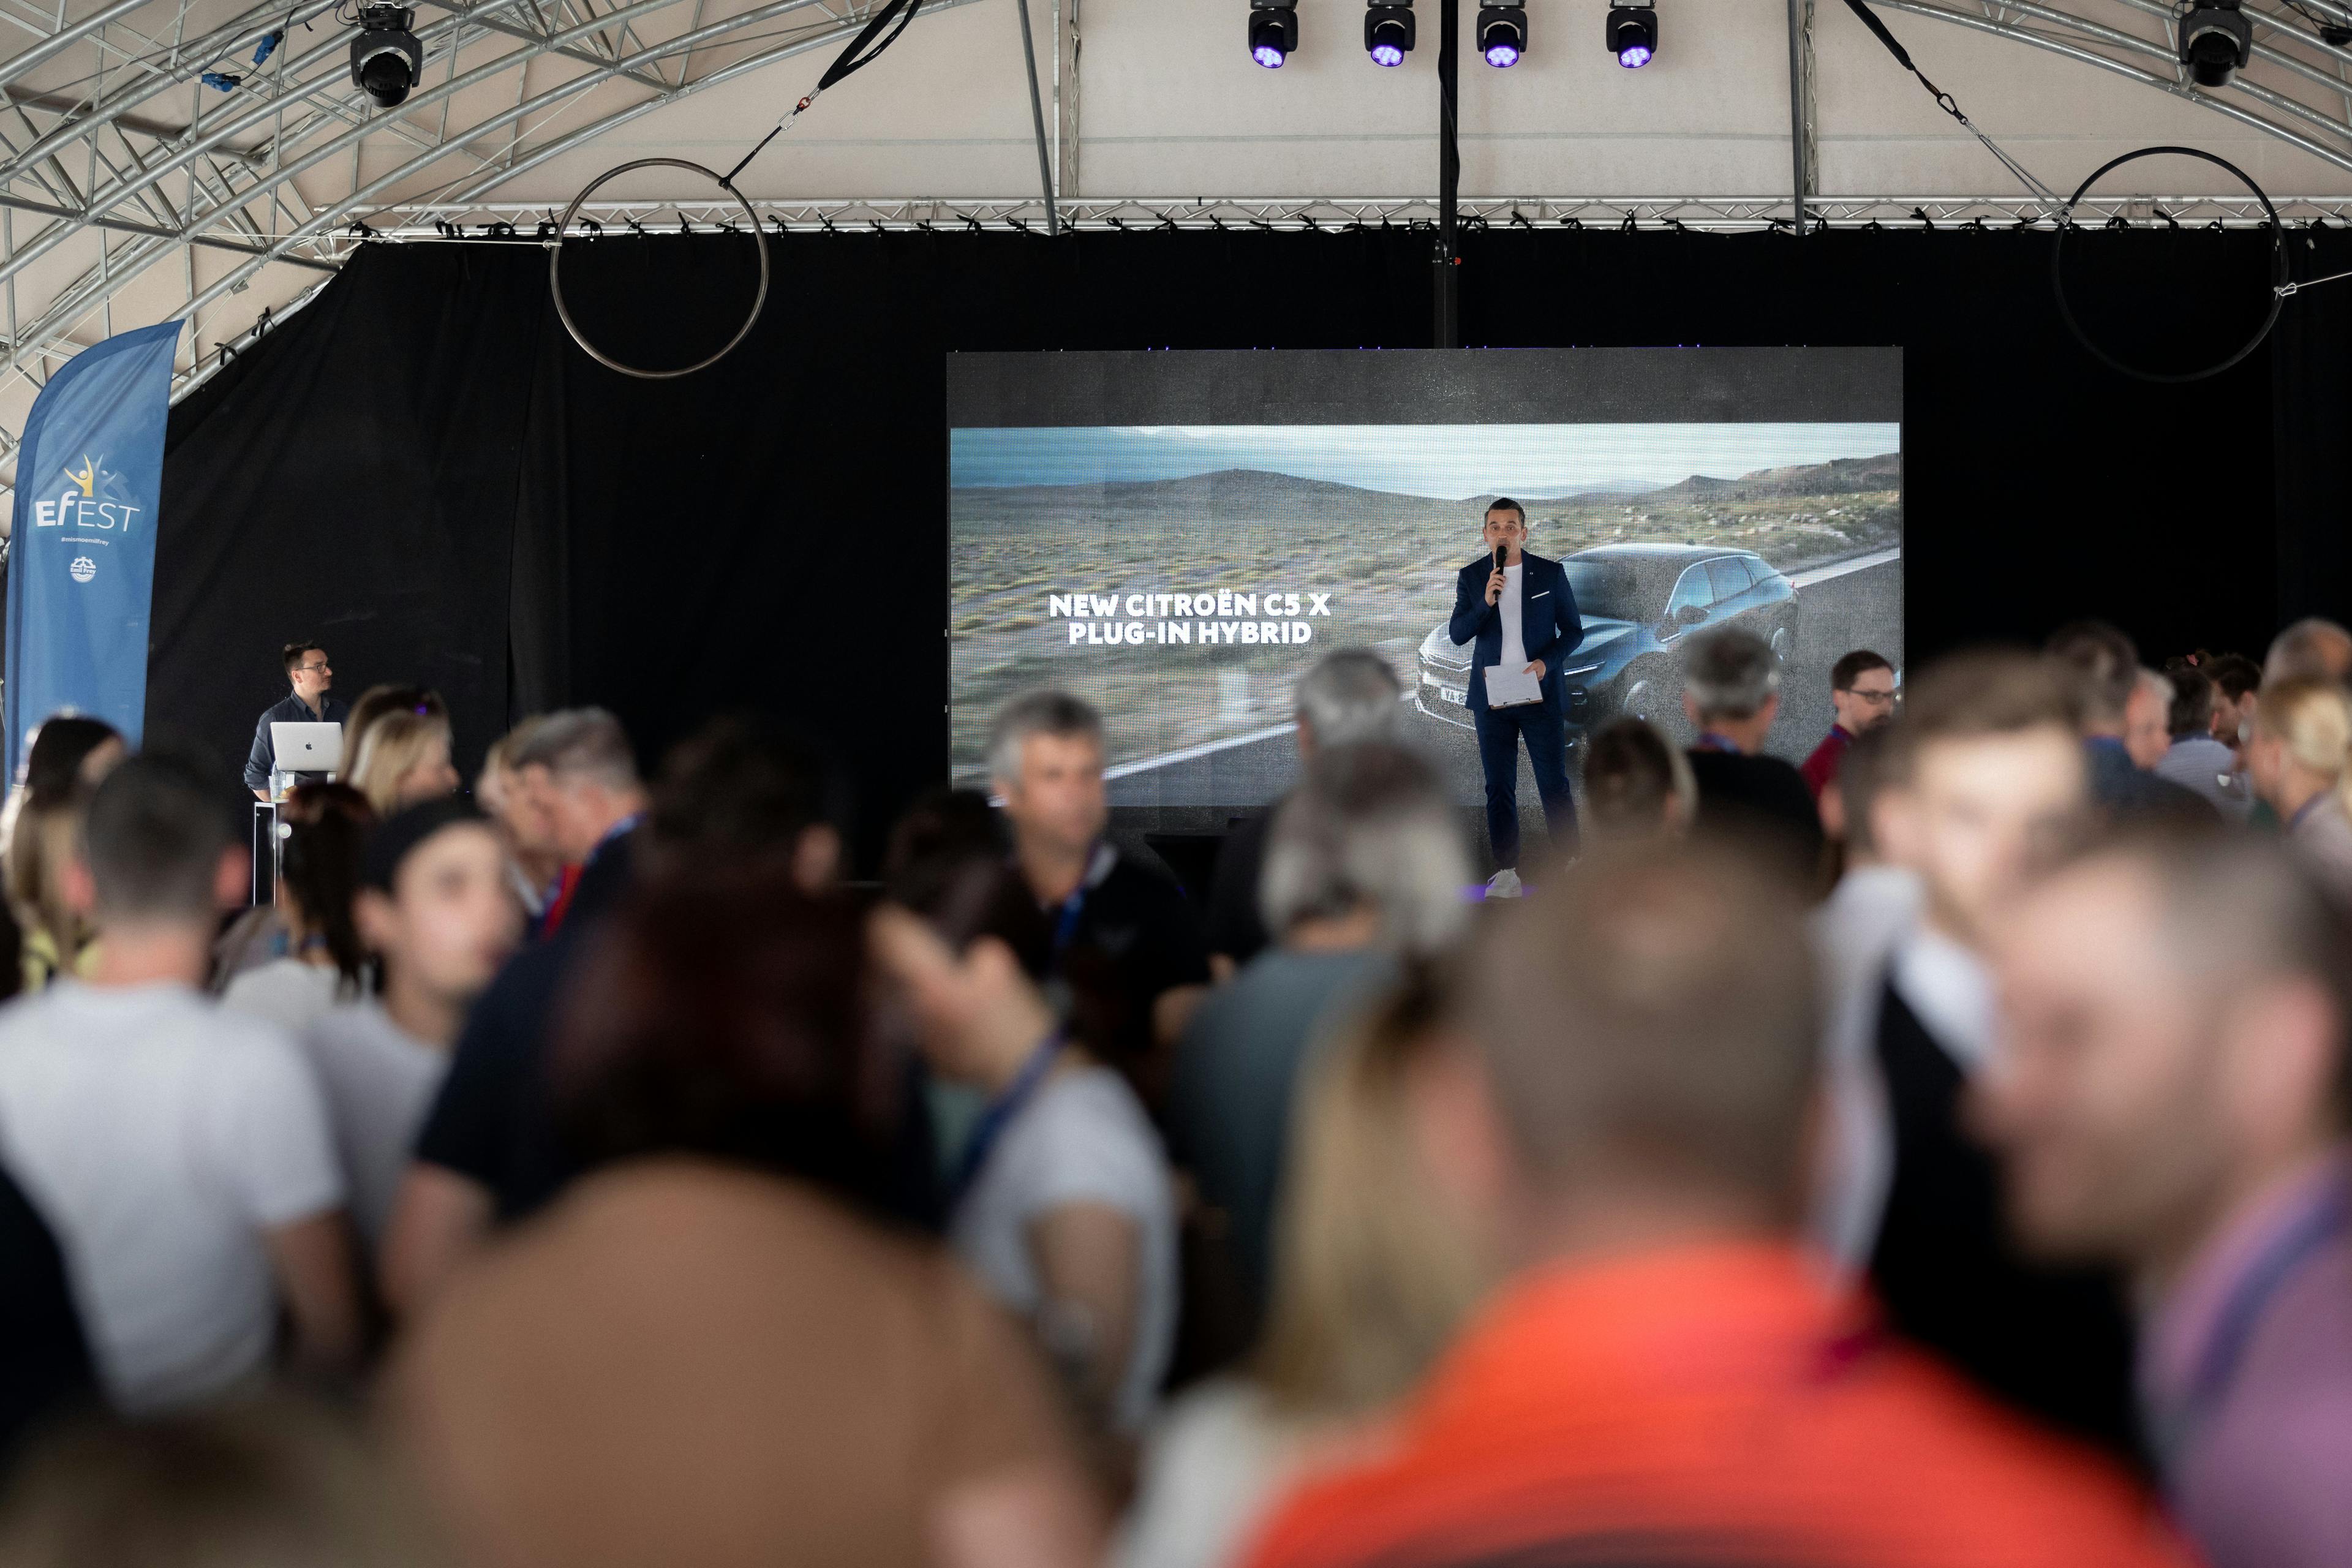 Predstavitev novega avtomobila na EFest 2022. Organizacija dogodka Paideia Events.